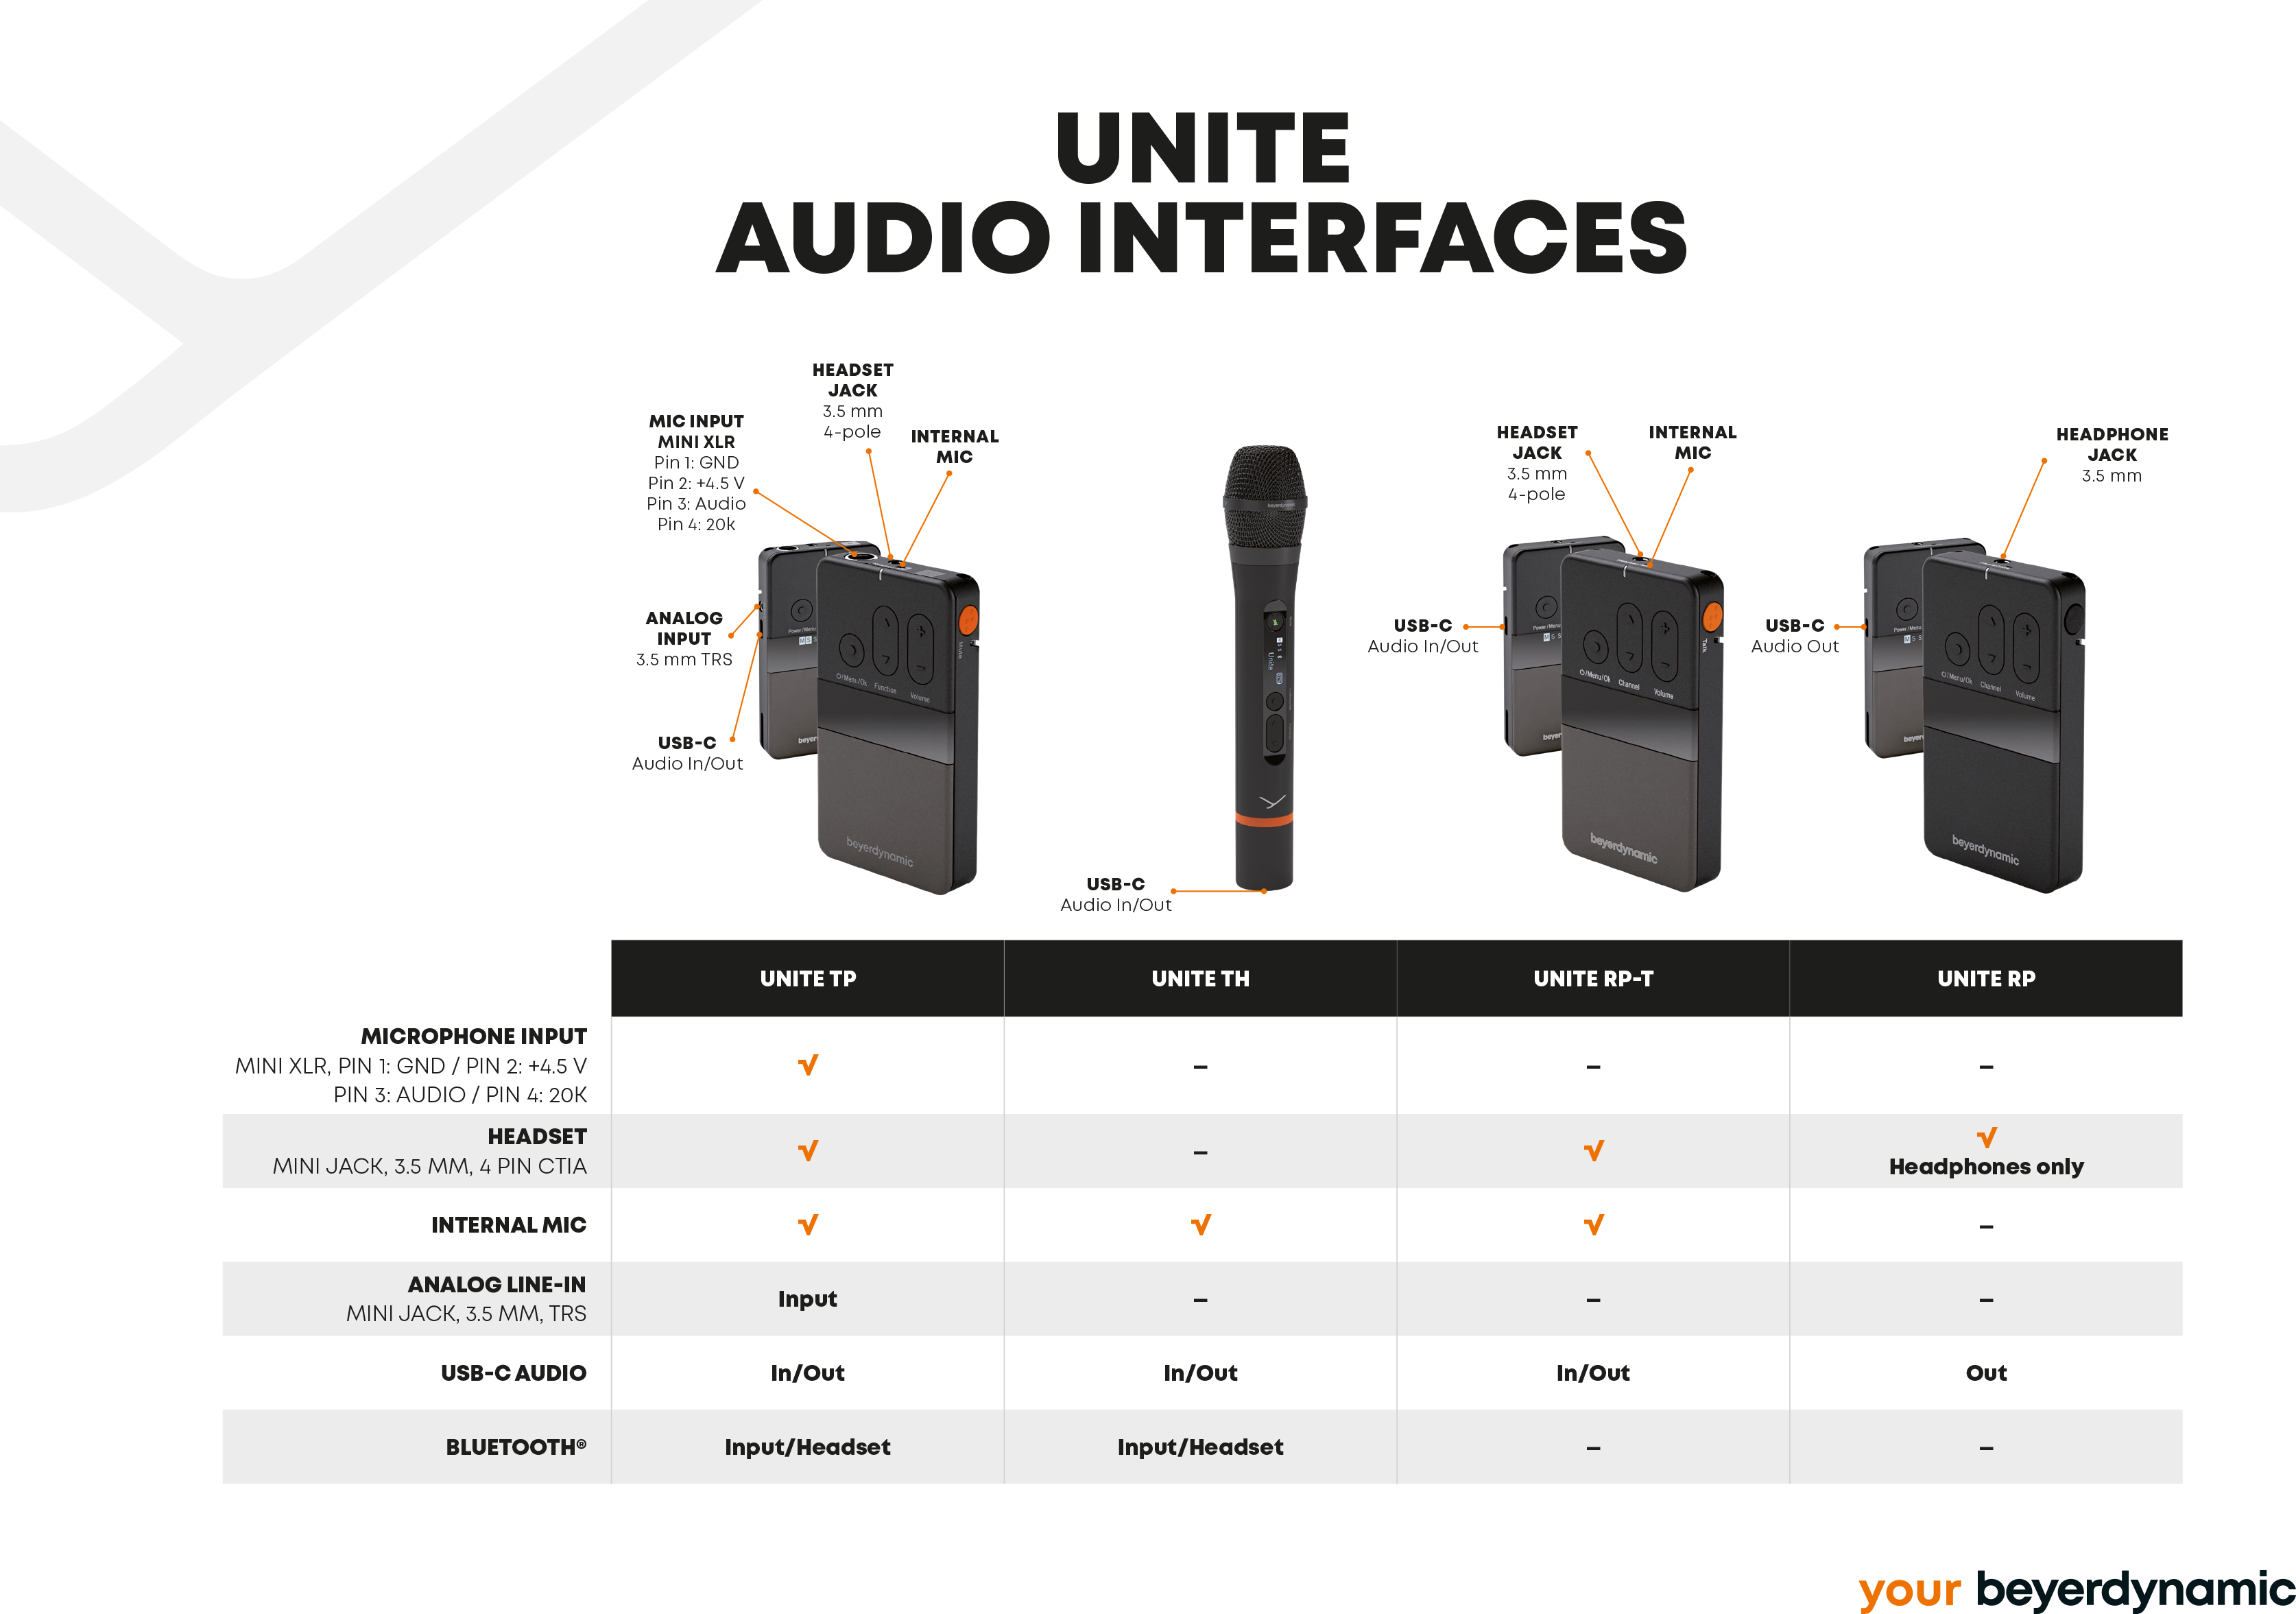 SAS_Unite-audio-interfaces_20-05_EN_A4_K03.png